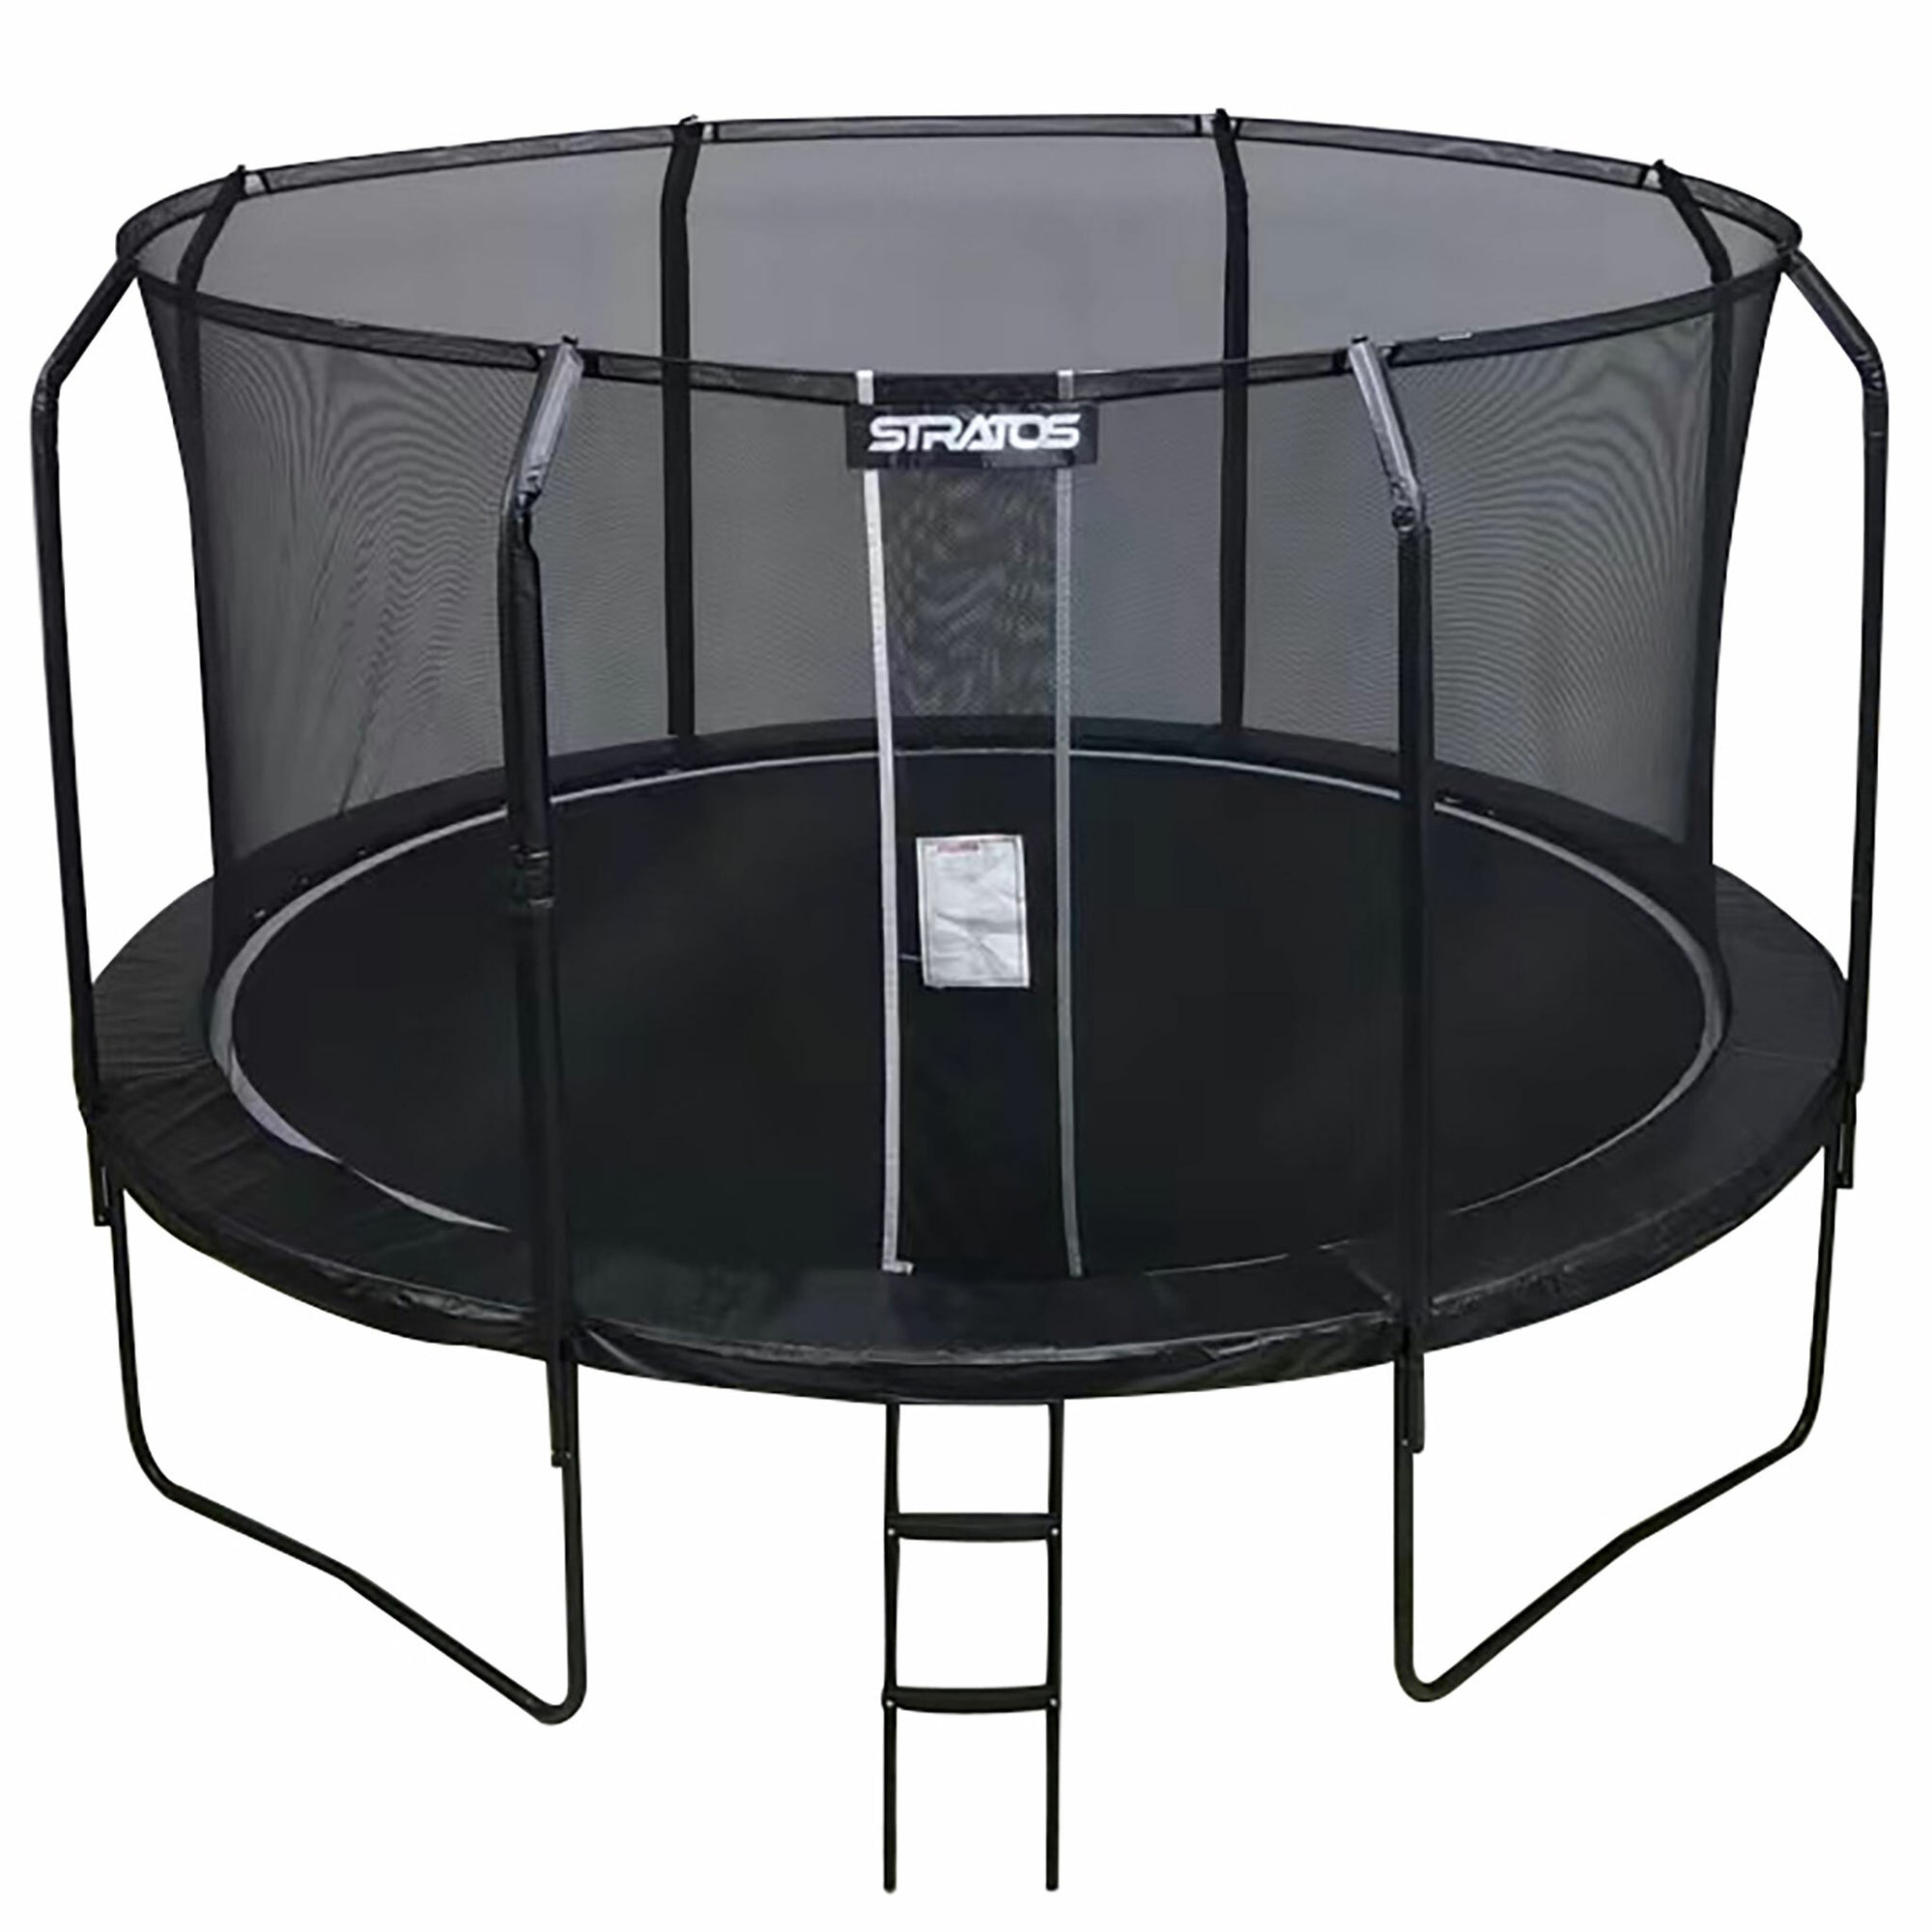 Stratos trampolin 427cm med sikkerhedsnet, Premium Black Line